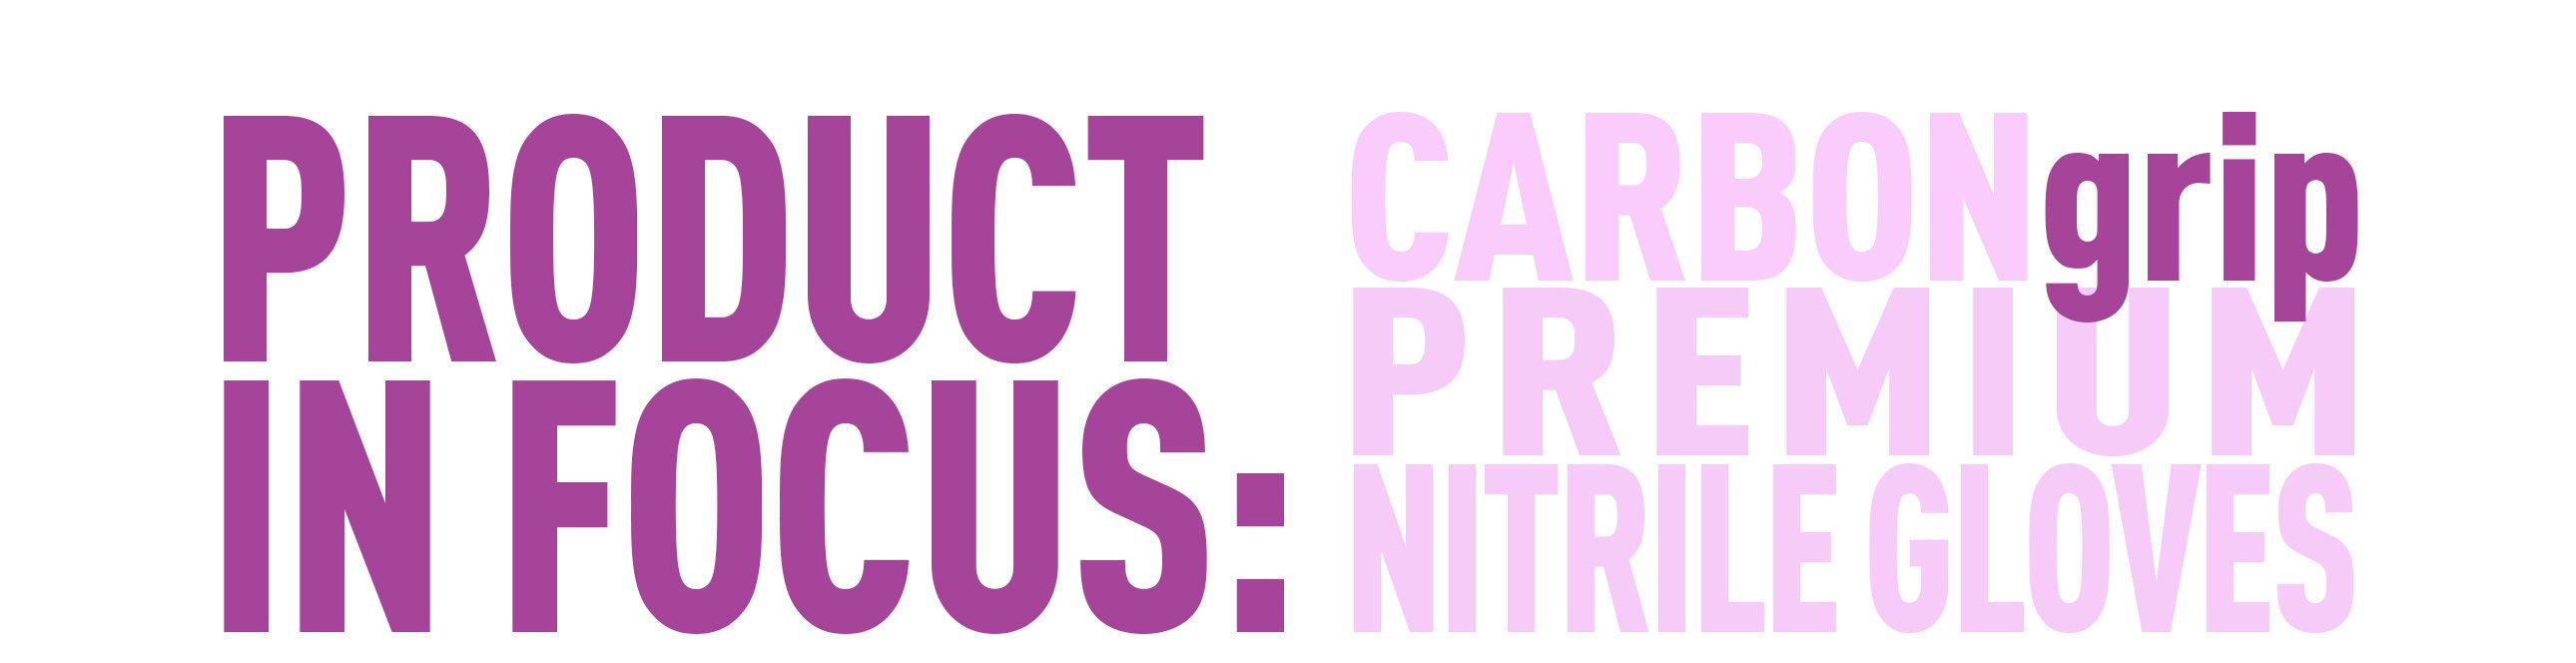 Product In Focus: CARBONgrip Premium Nitrile Gloves